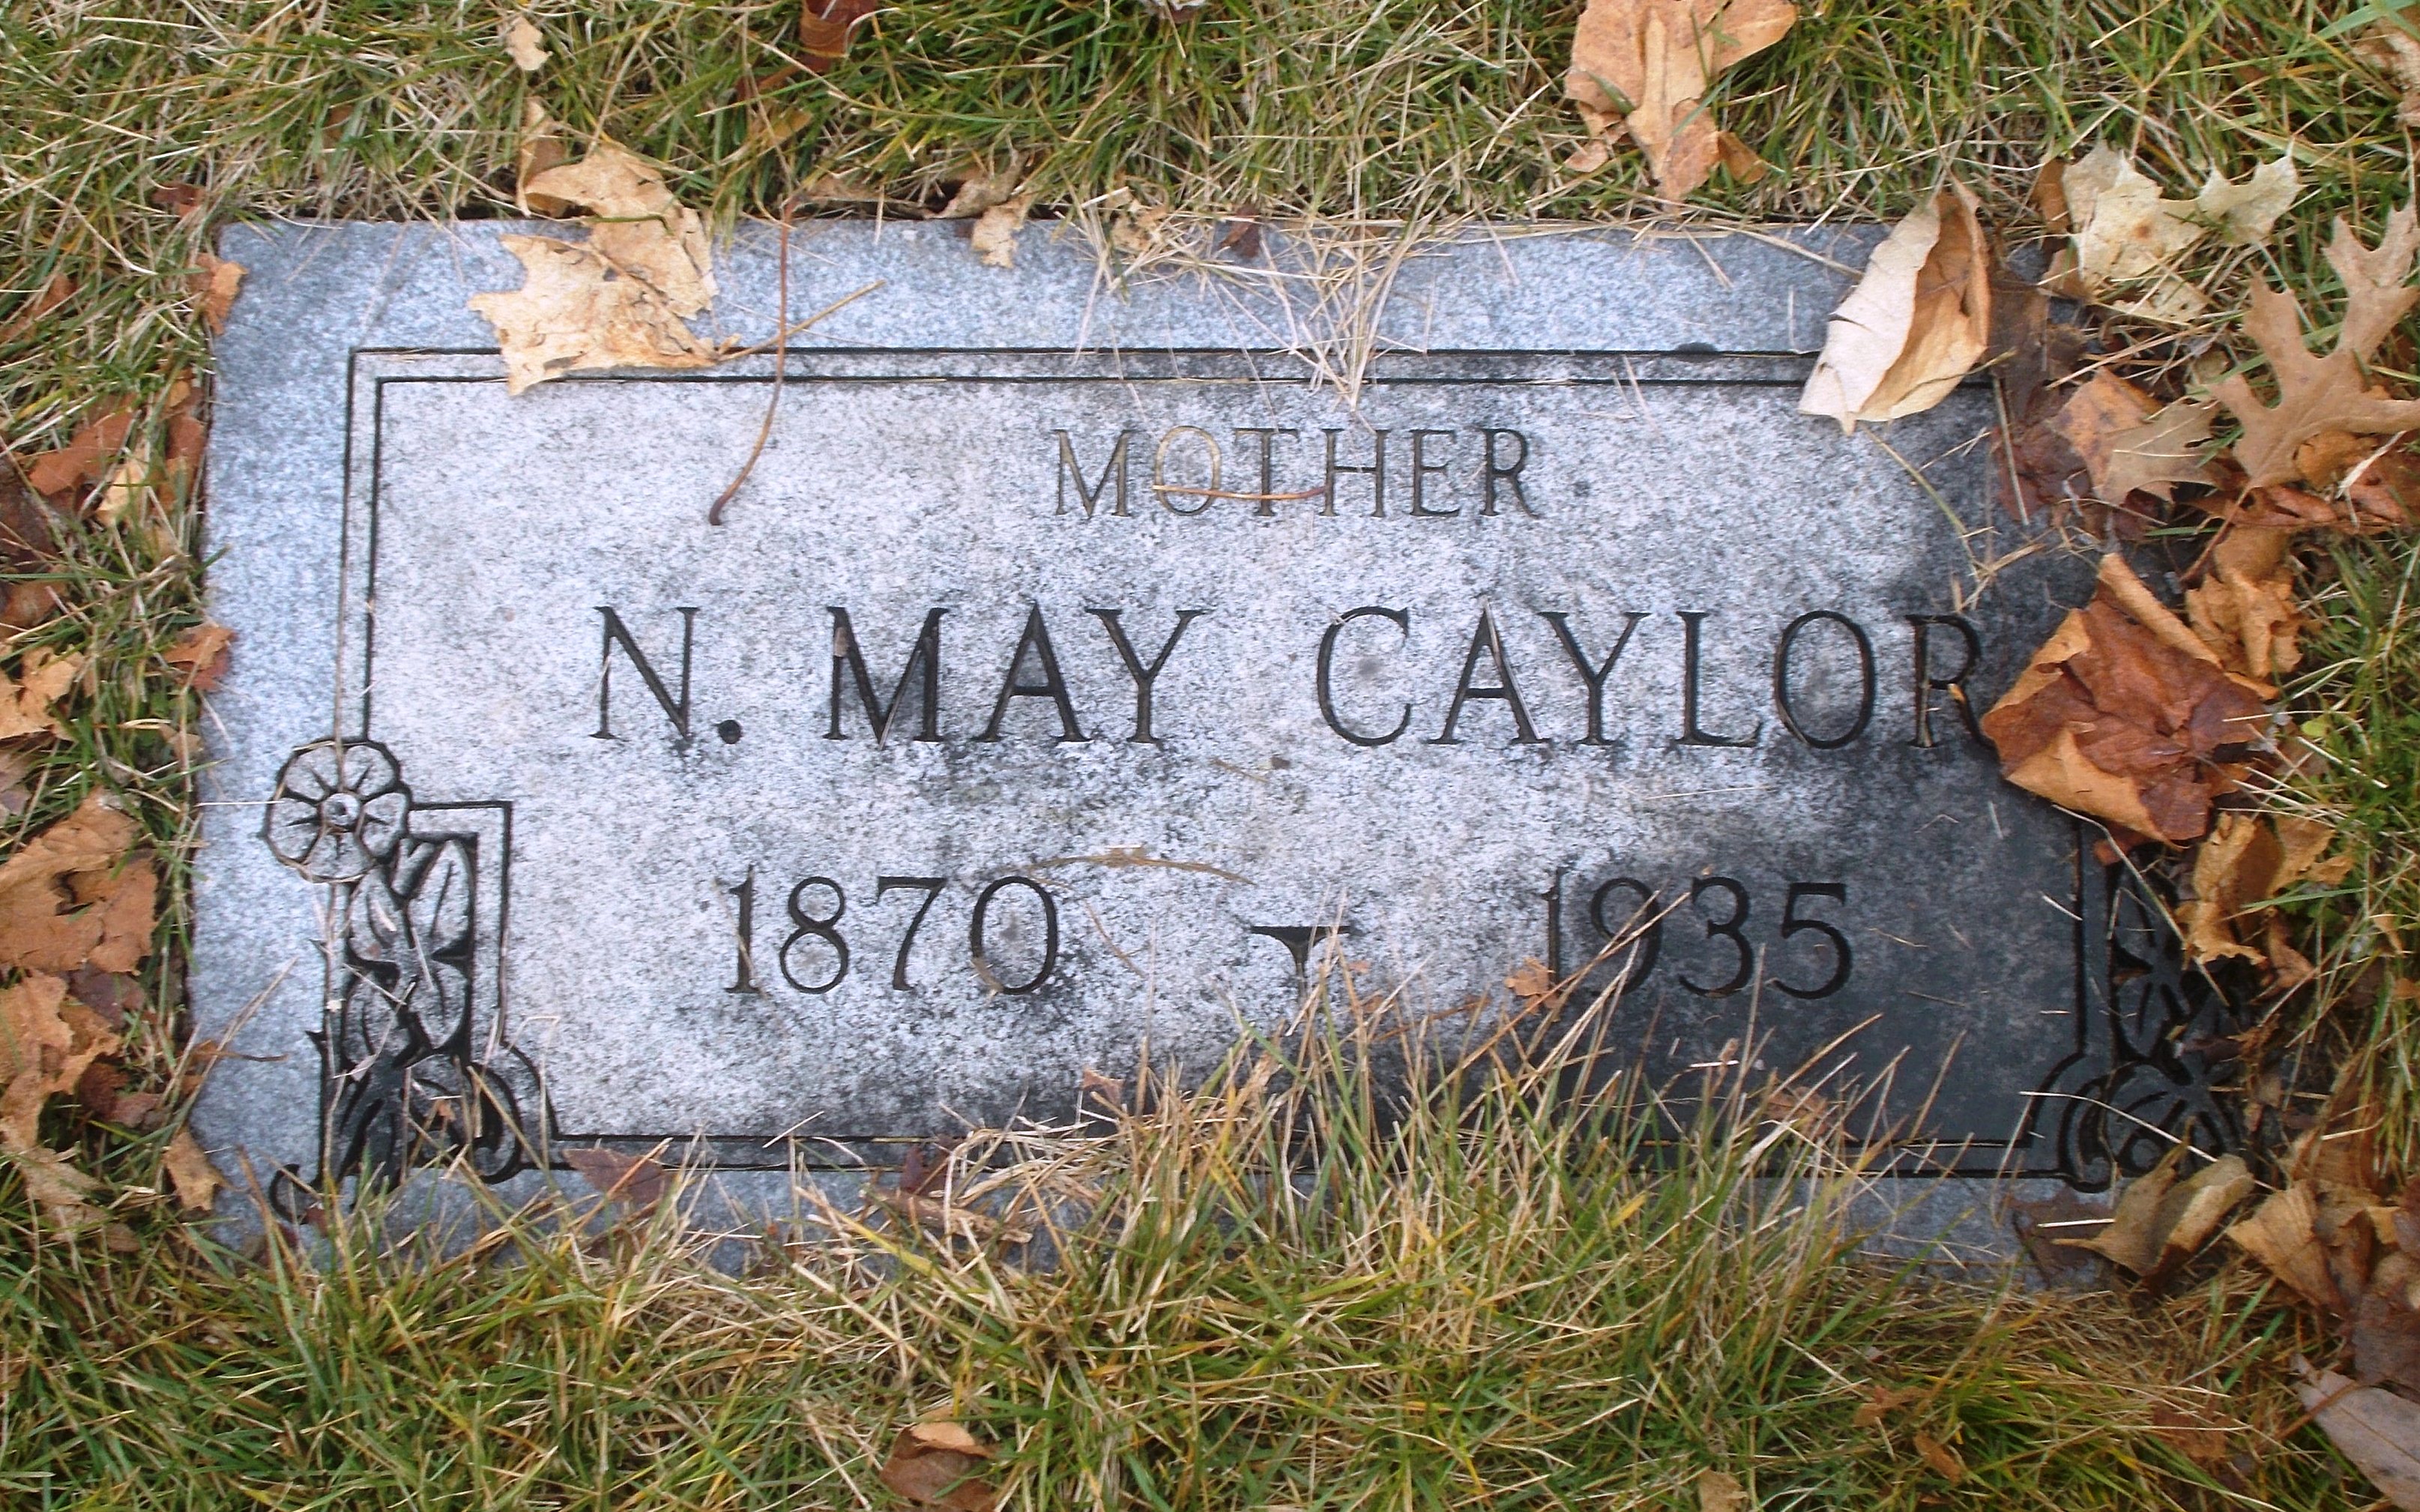 N May Caylor